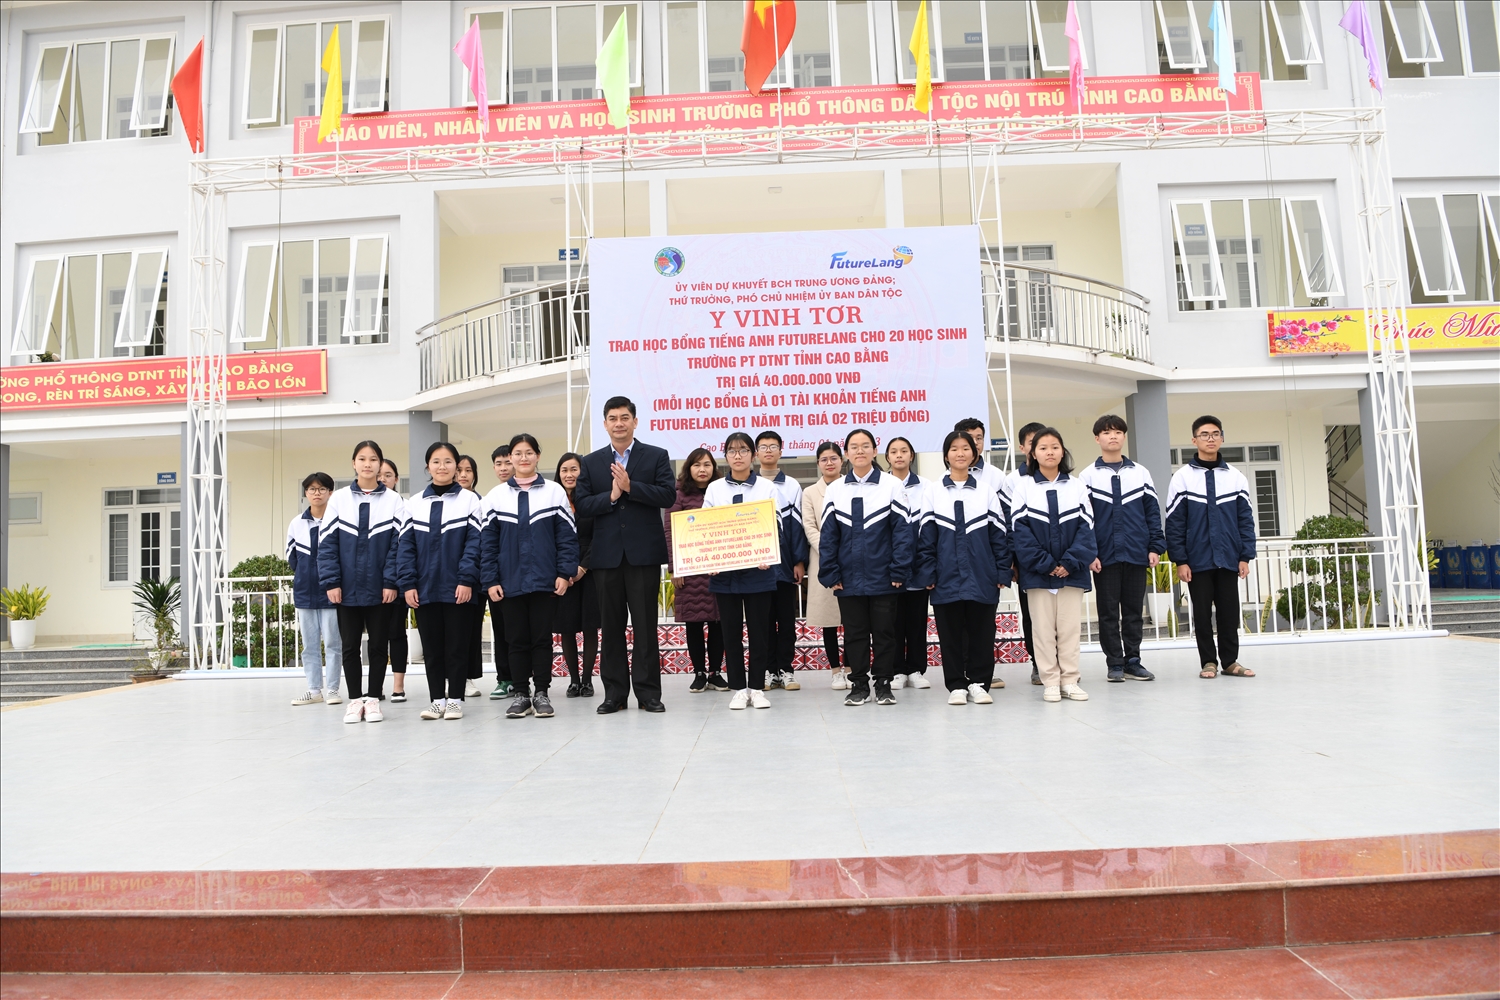 Thứ trưởng, Phó Chủ nhiệm UBDT Y Vinh Tơr trao tặng 20 suất học bổng cho học sinh Trường THPT Dân tộc nội trú tỉnh Cao Bằng